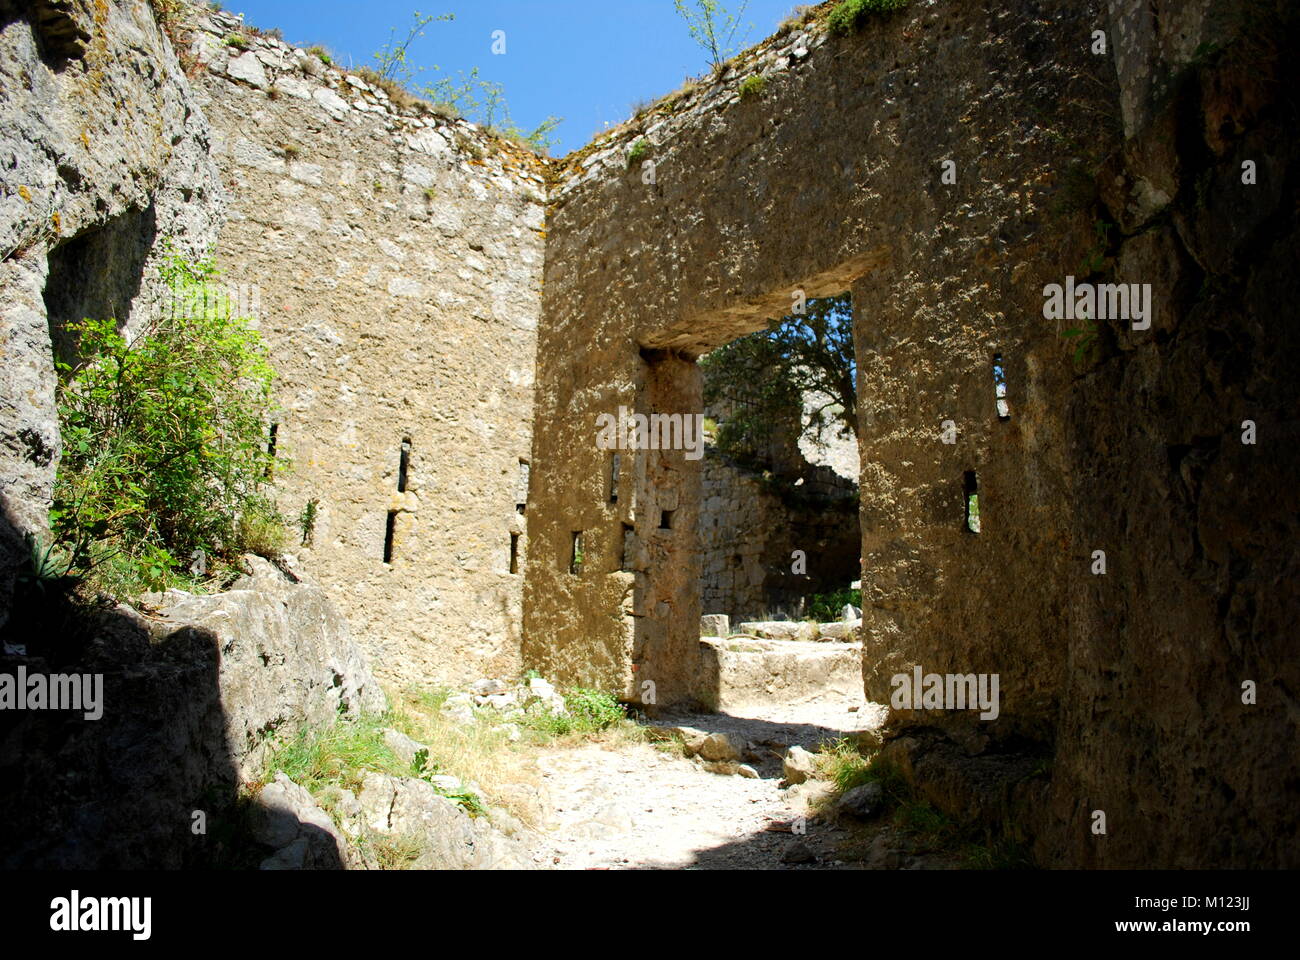 L'intérieur le château de Puilaurens dans le sud de la France, construit par les Cathares qui a suivi une version gnostique du christianisme. Elles sont considérées par beaucoup d'altern Banque D'Images